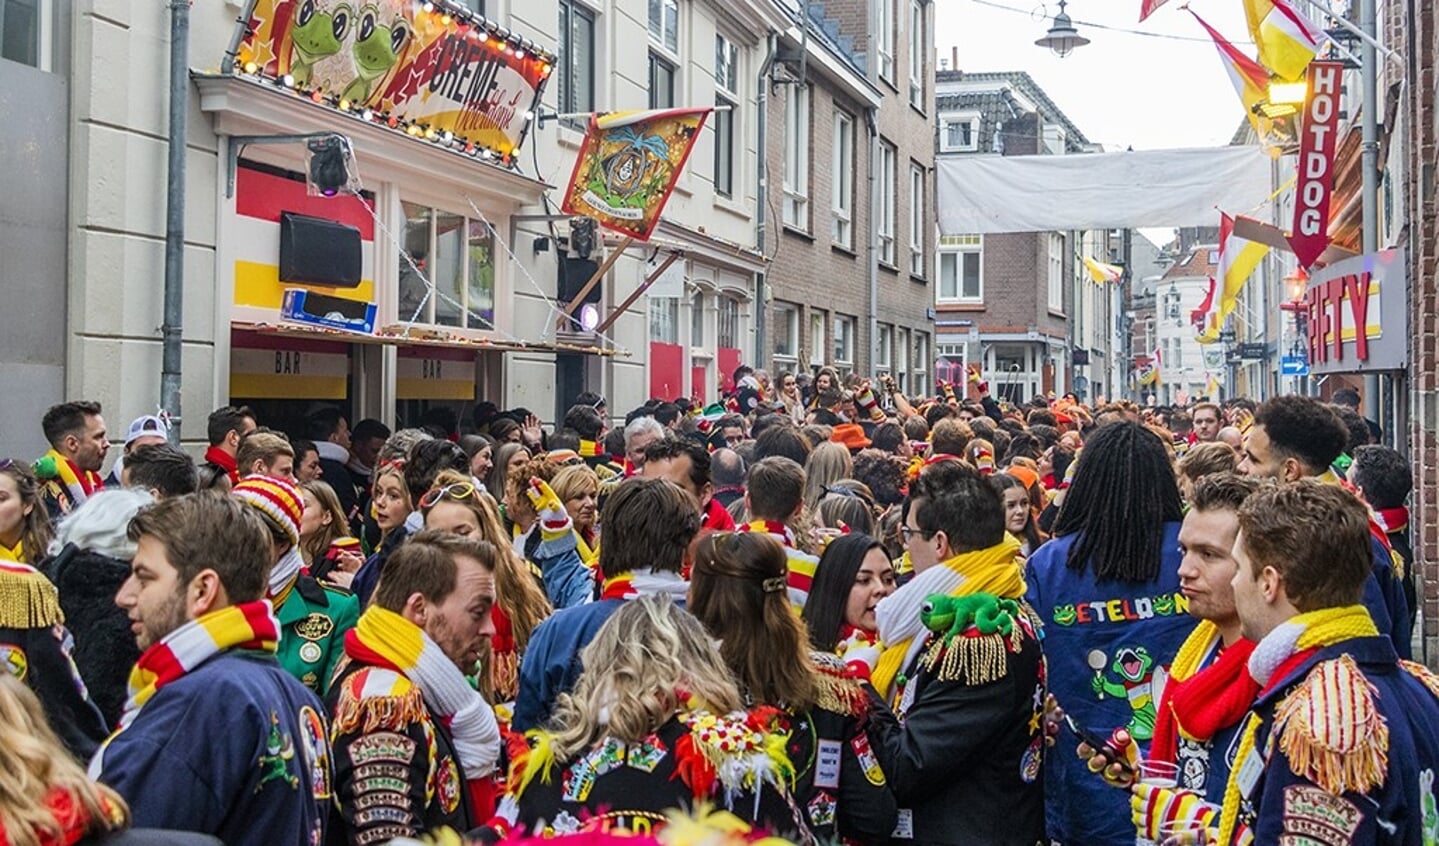 Carnaval in Oeteldonk.